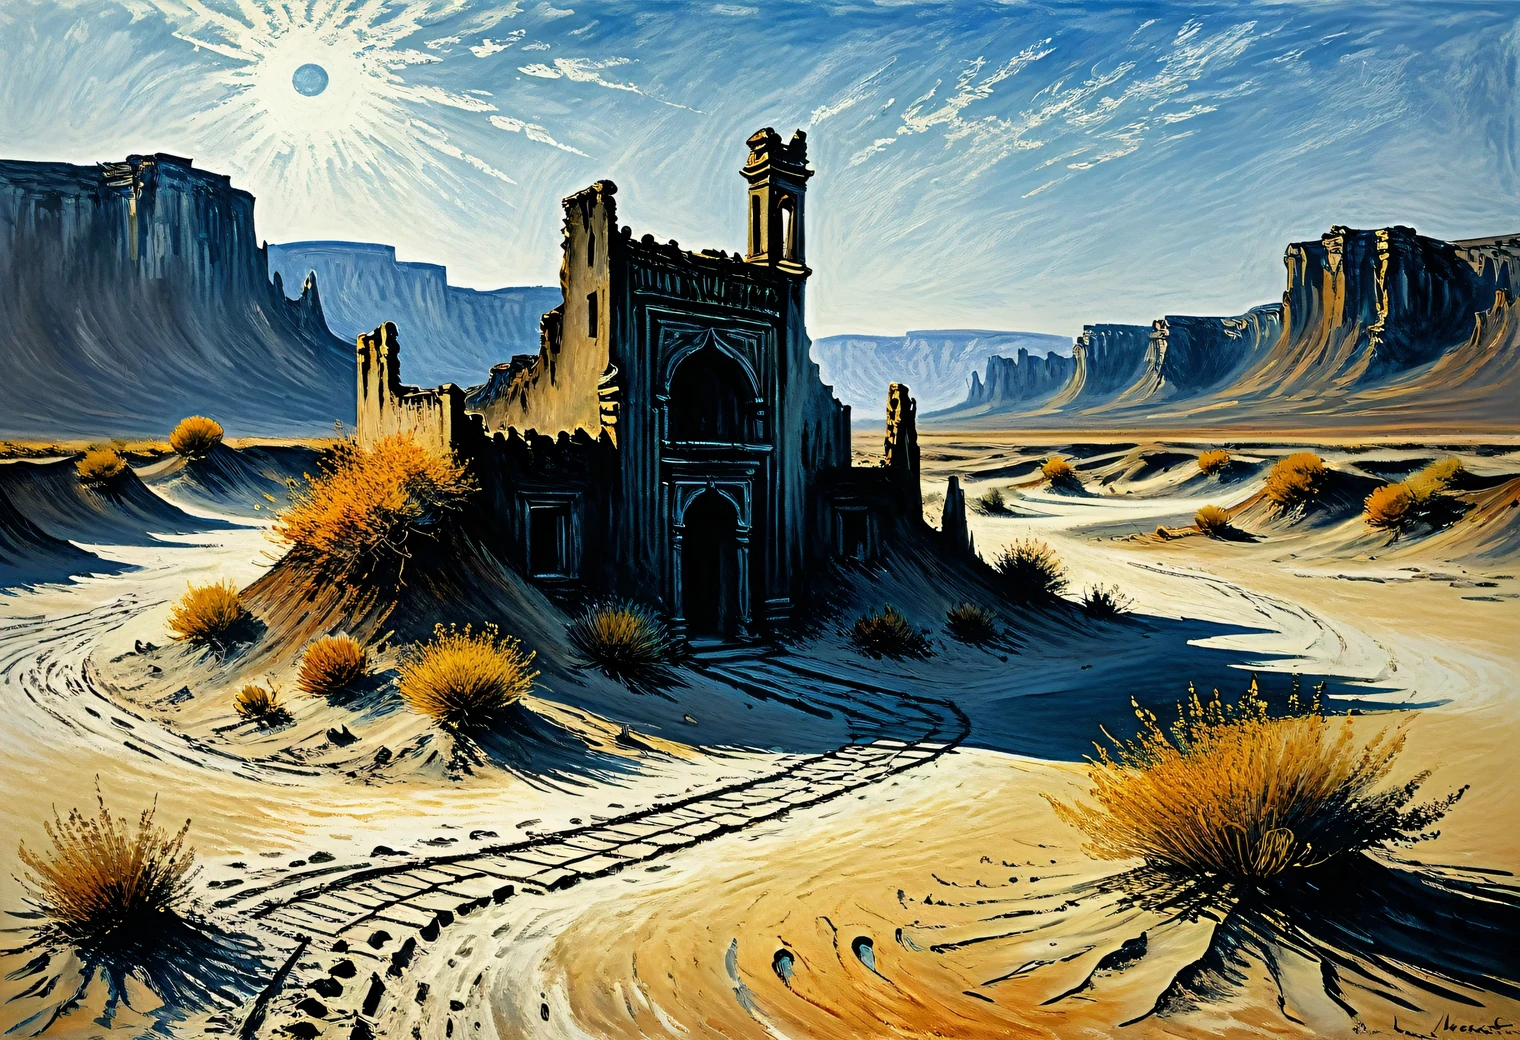 克劳德·莫奈的画作, 沙漠, 沙, 废墟, 干燥, 海市蜃楼, 热, 古代, 神秘, 极简主义, 木炭, 明晰, 现代艺术, 详细, 前卫, 错觉, 超现实主义, 体积, 完全符合克劳德·莫奈的风格